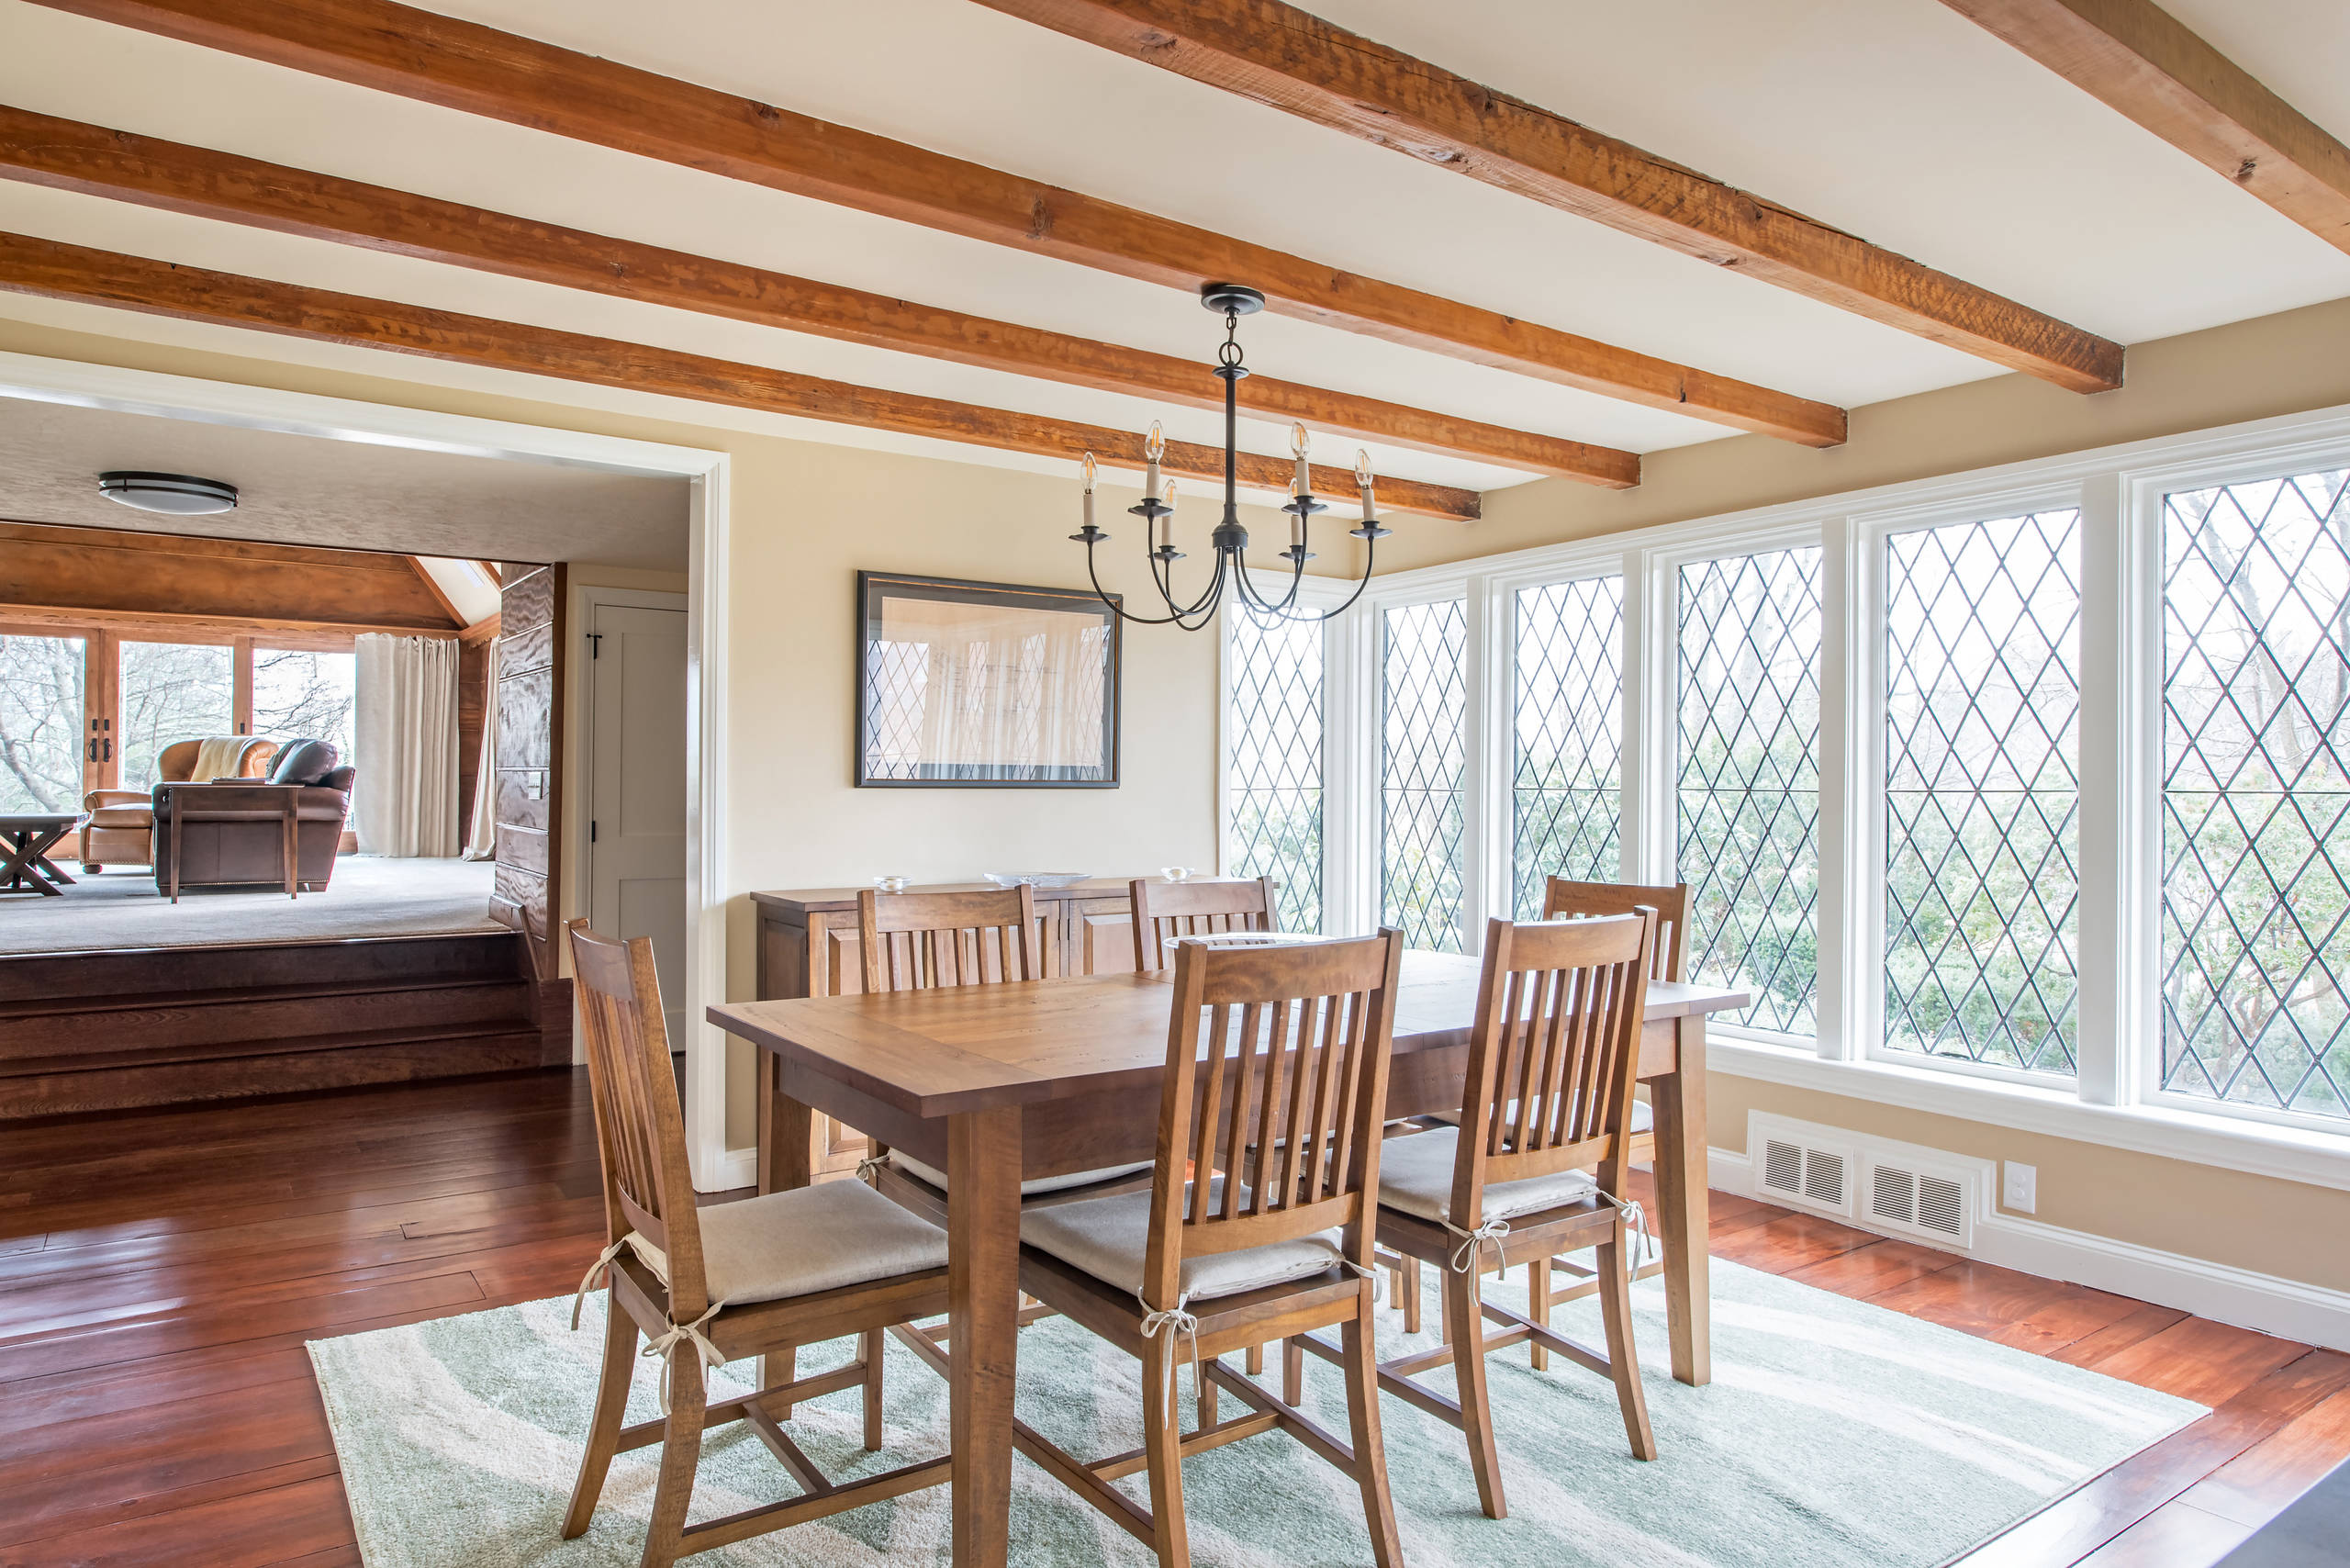 Tudor Interior Home Design